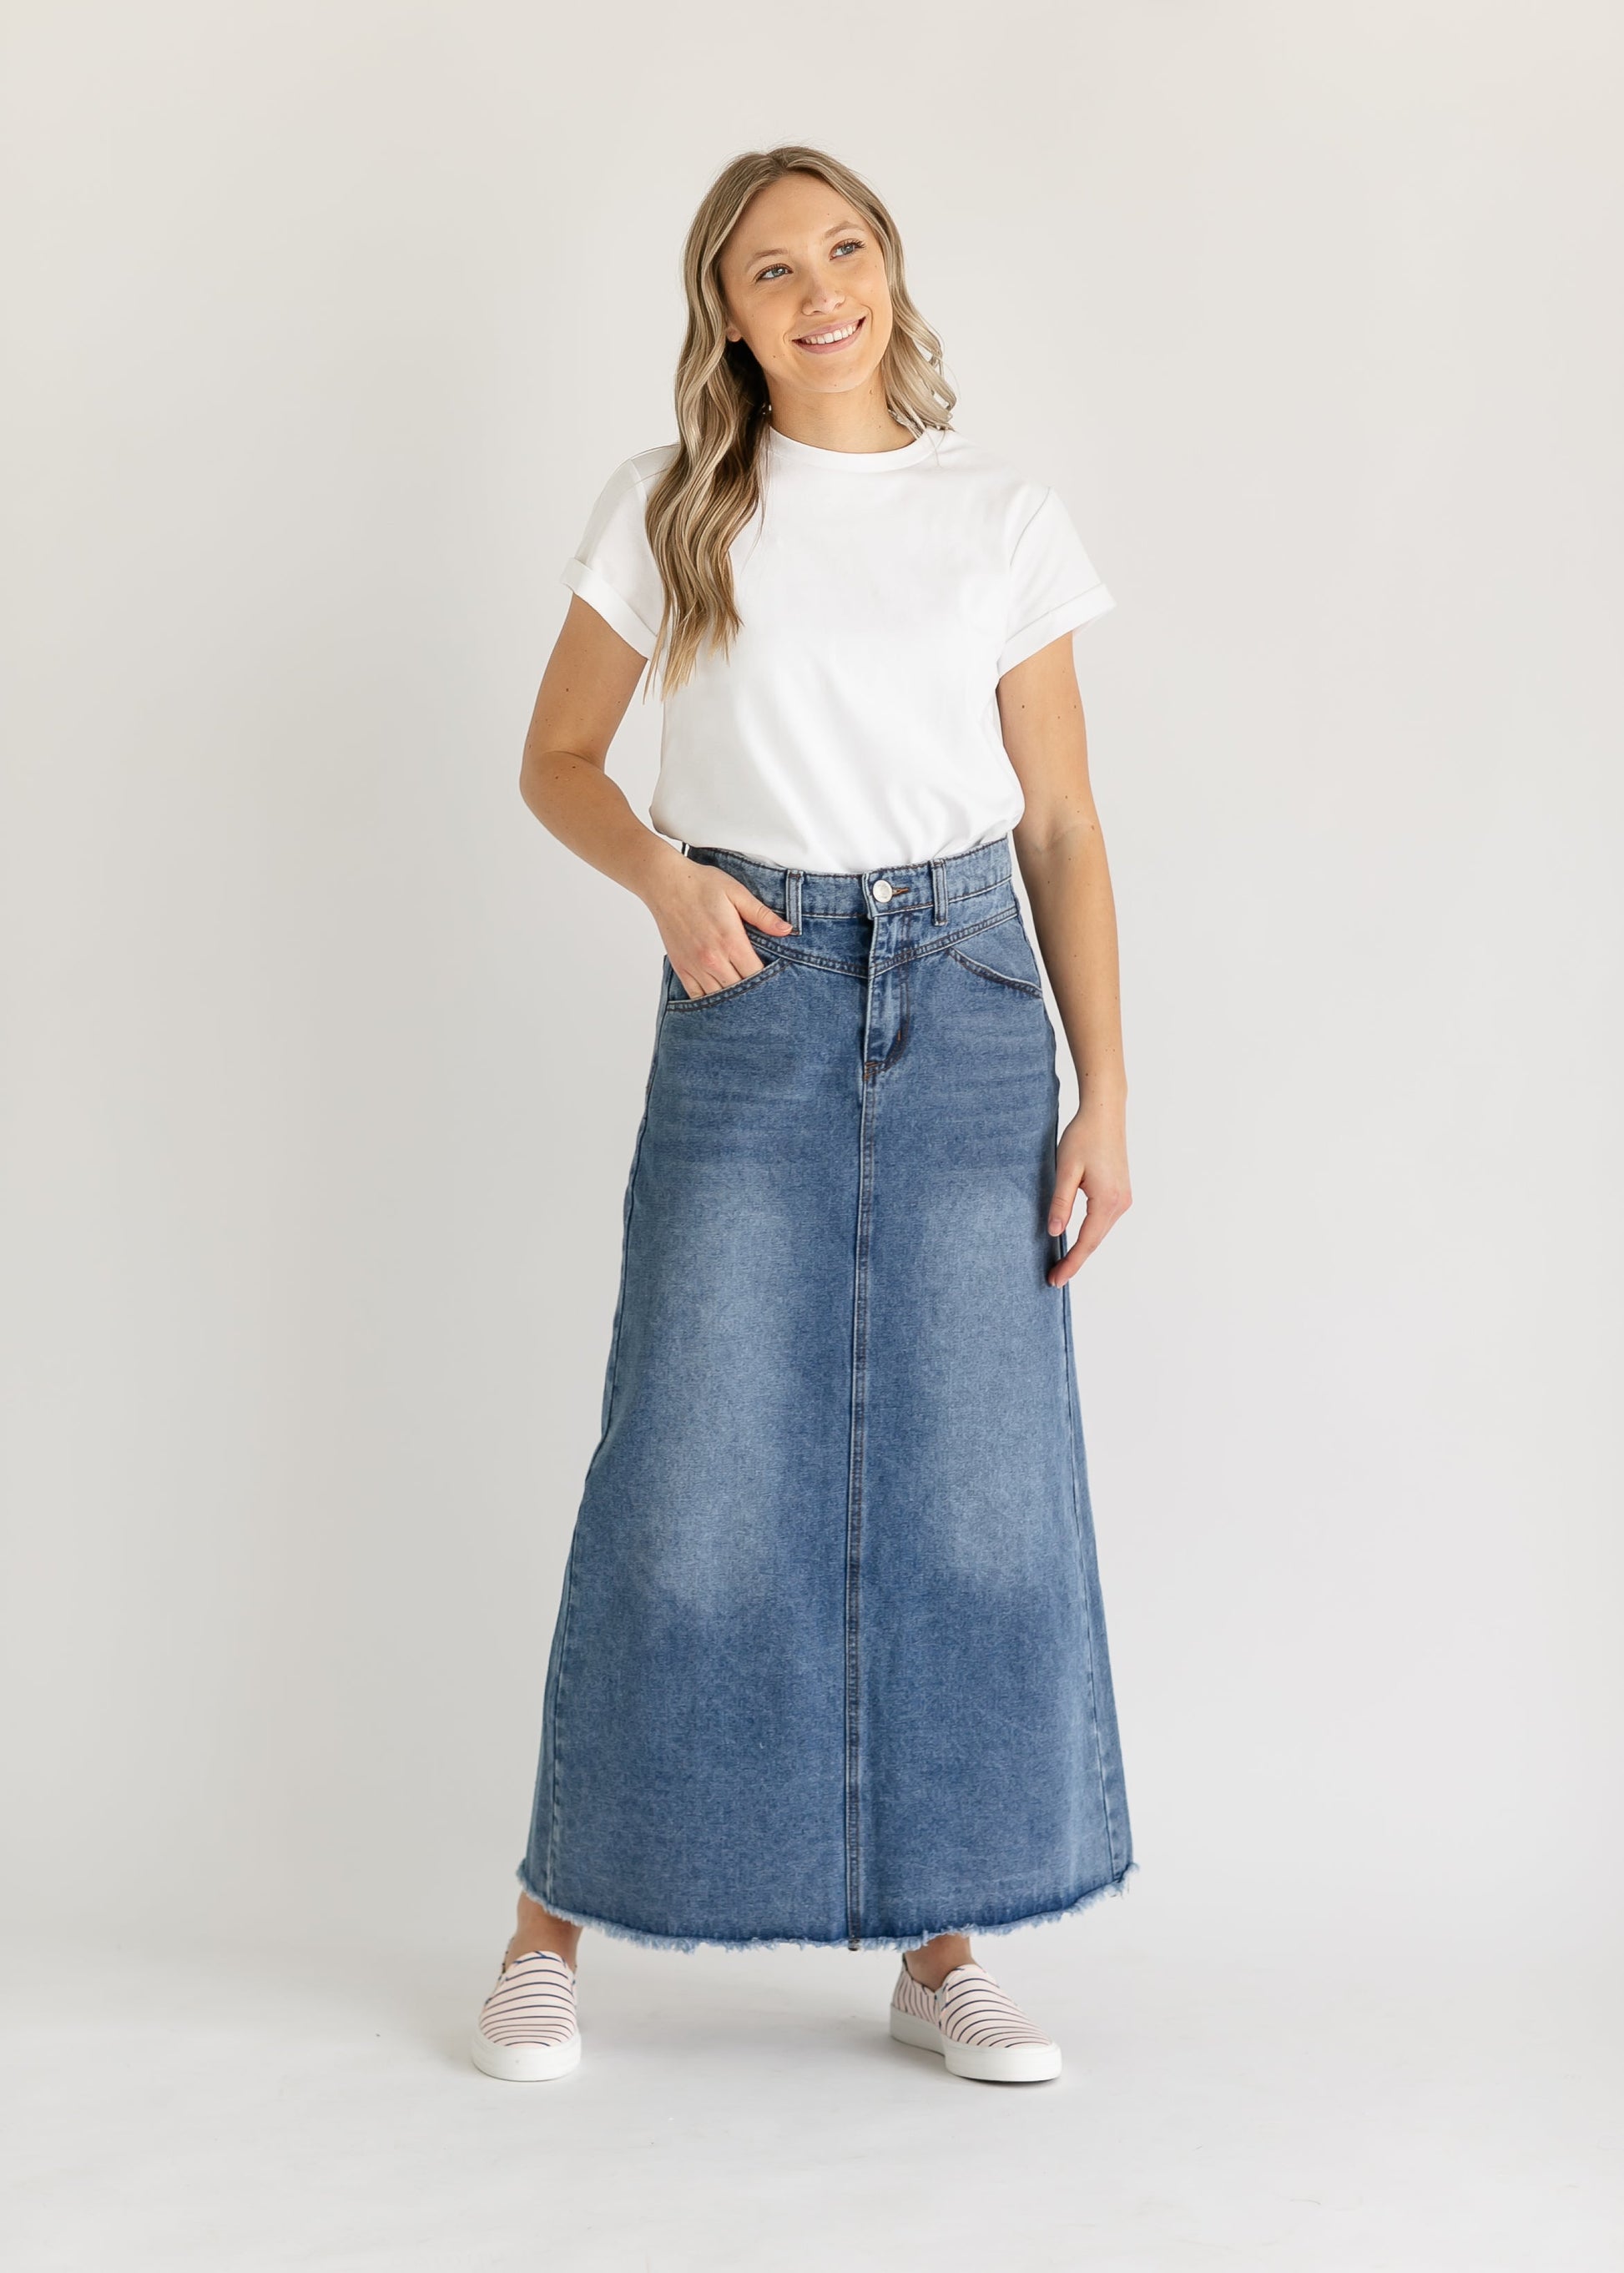 Shenoa Maxi Denim Skirt IC Skirts